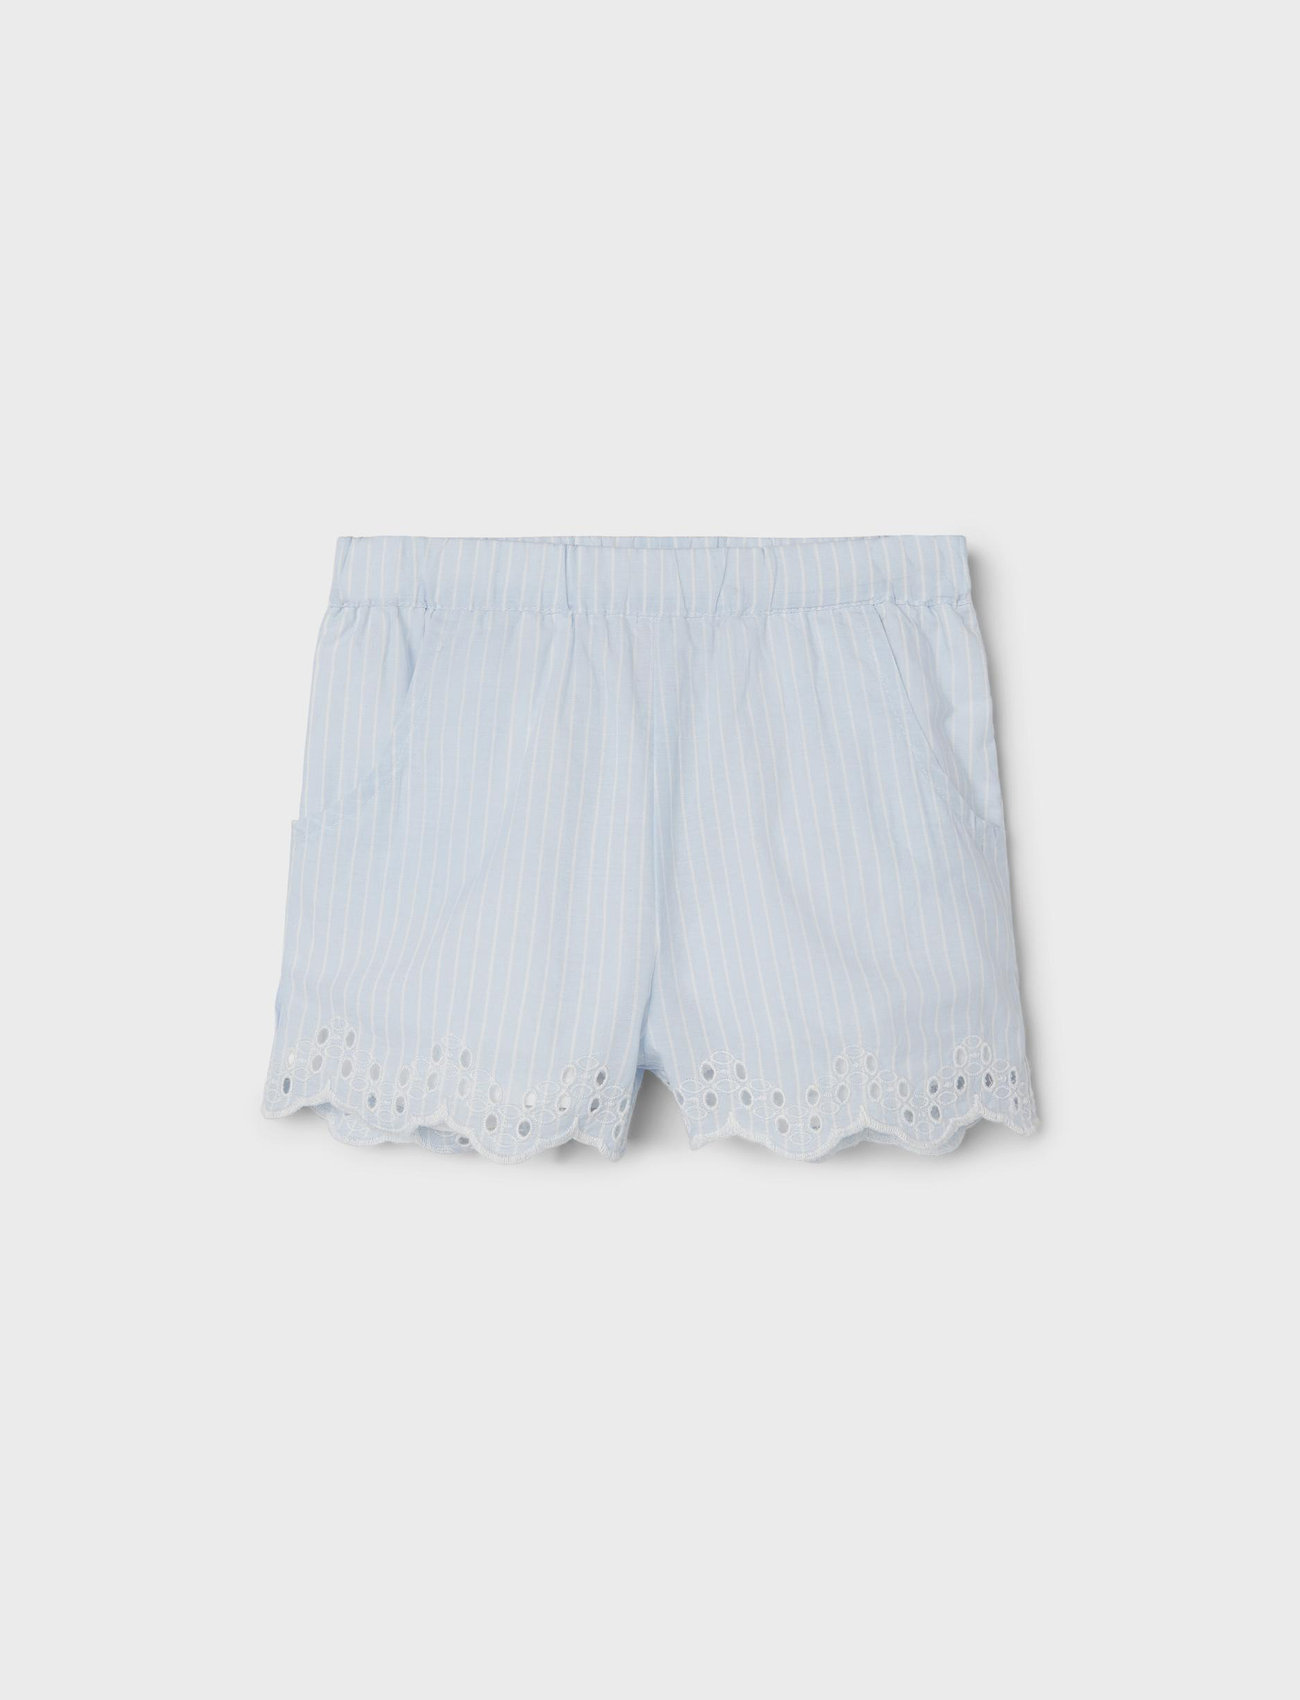 name it - NMFFESINNE SHORTS - sweat shorts - chambray blue - 0